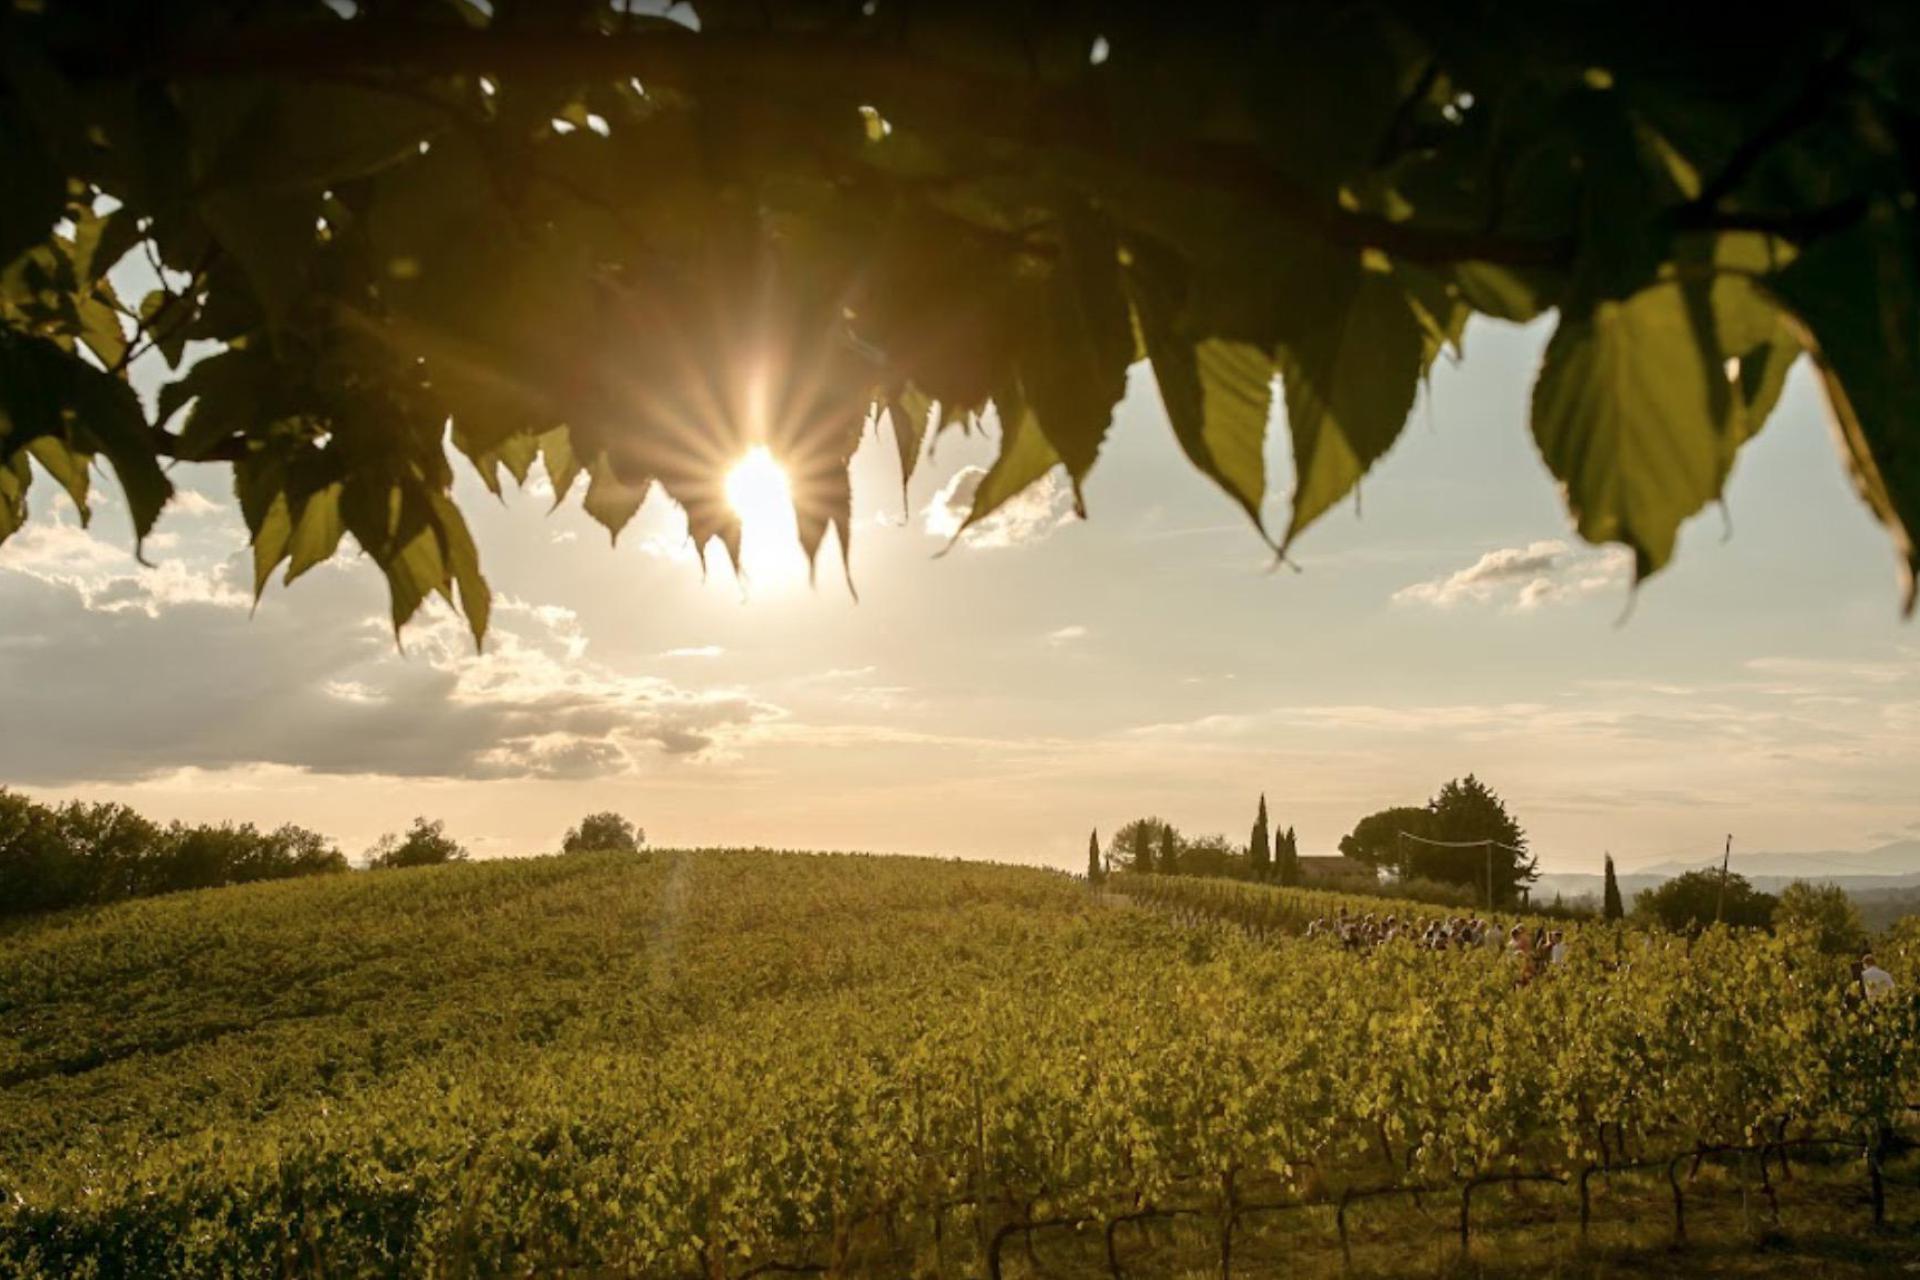 Authentic wine farm in the Chianti region